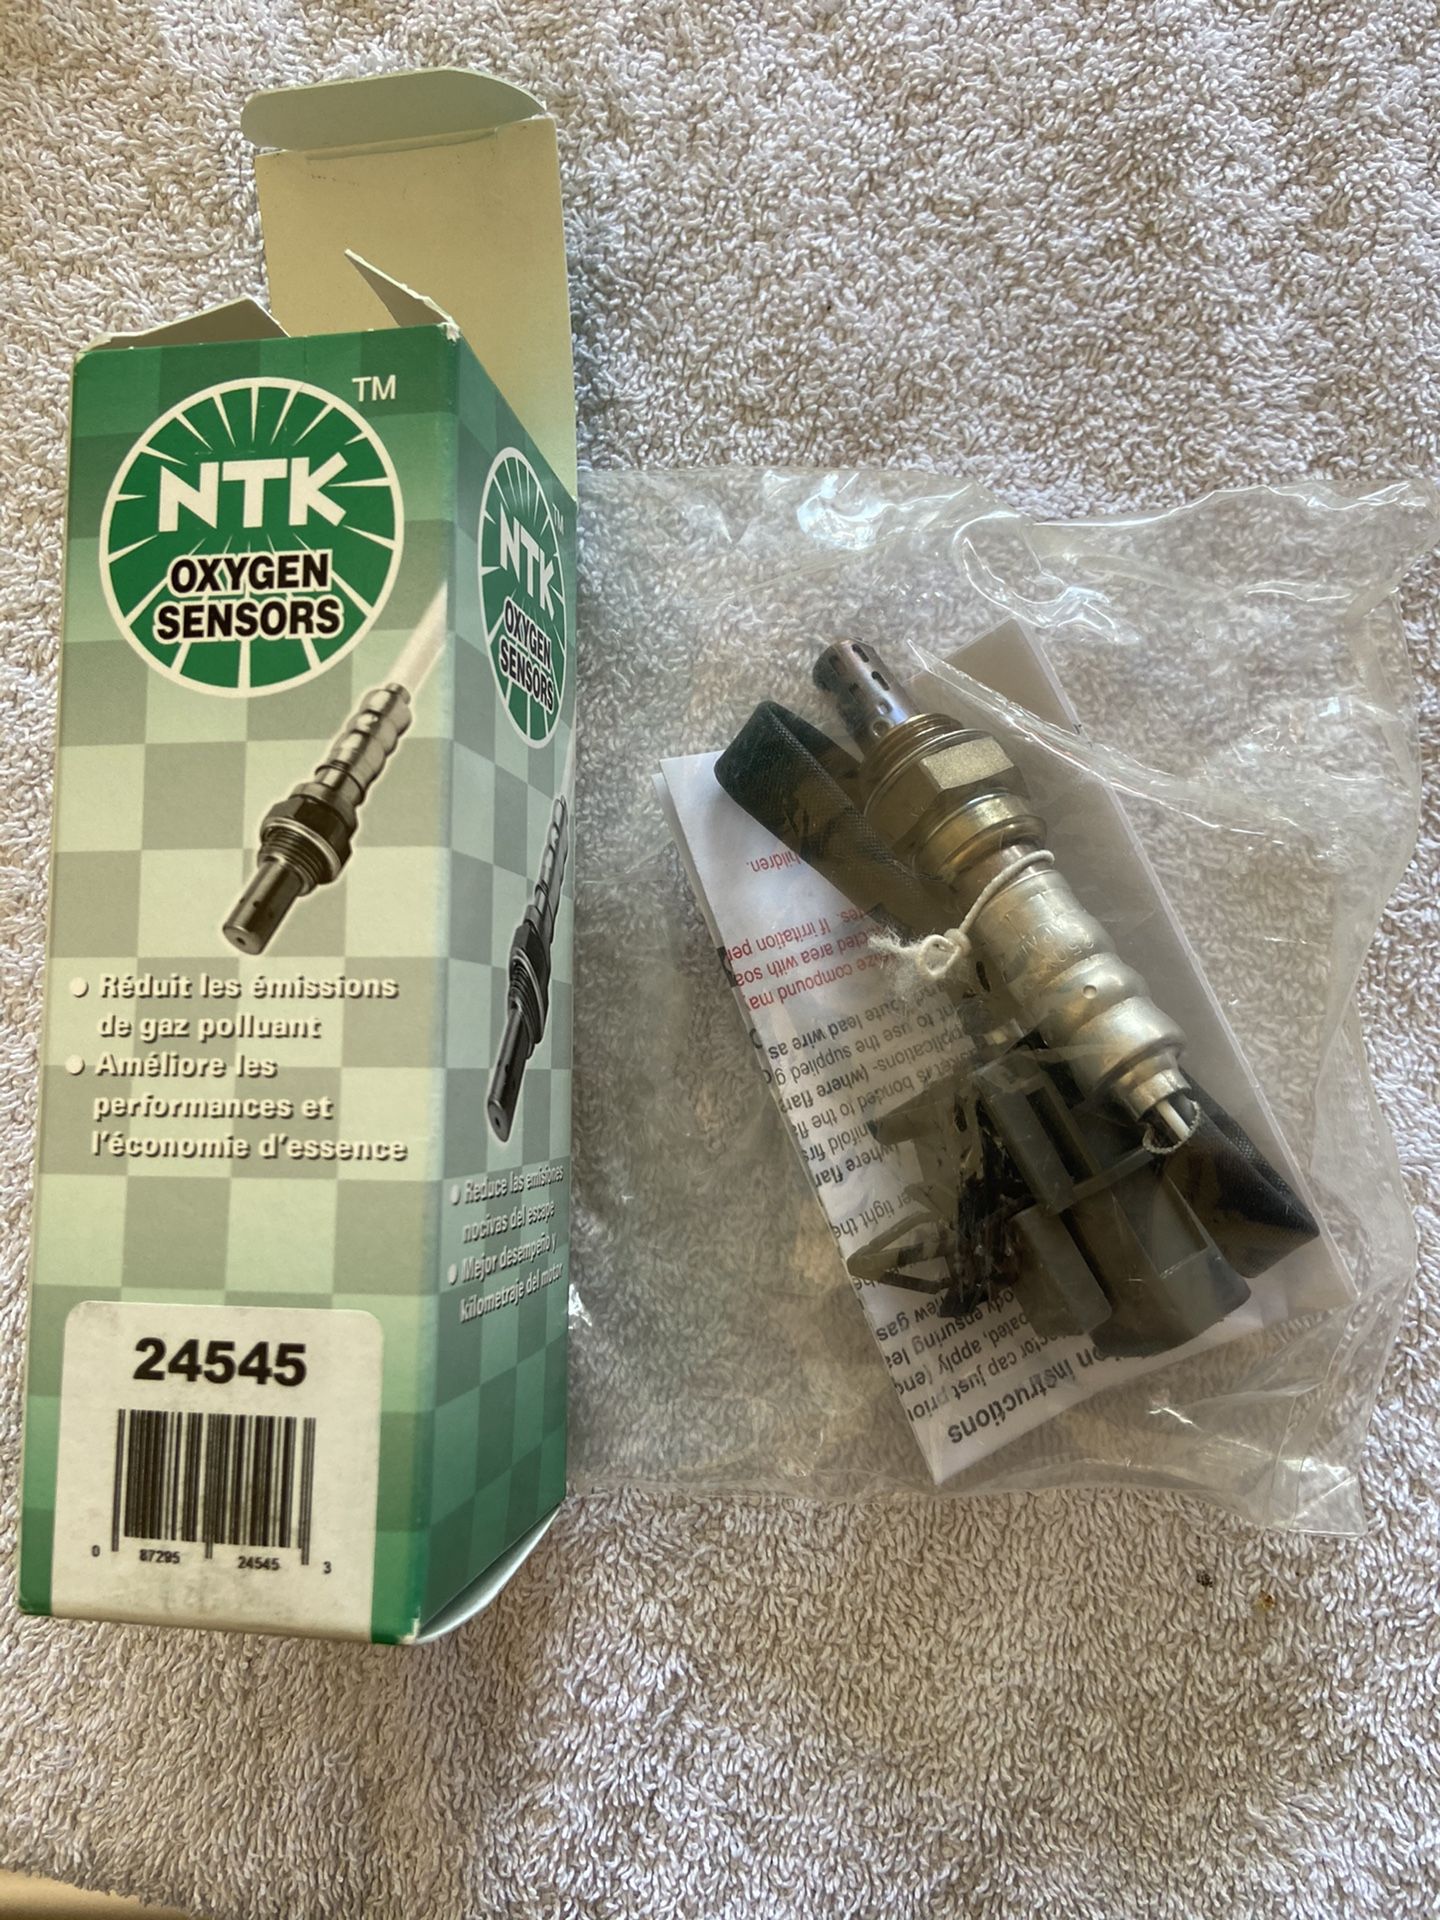 NTK Oxygen Sensors 24545 NGK Oxygen Sensor - NGK/NTK Packaging